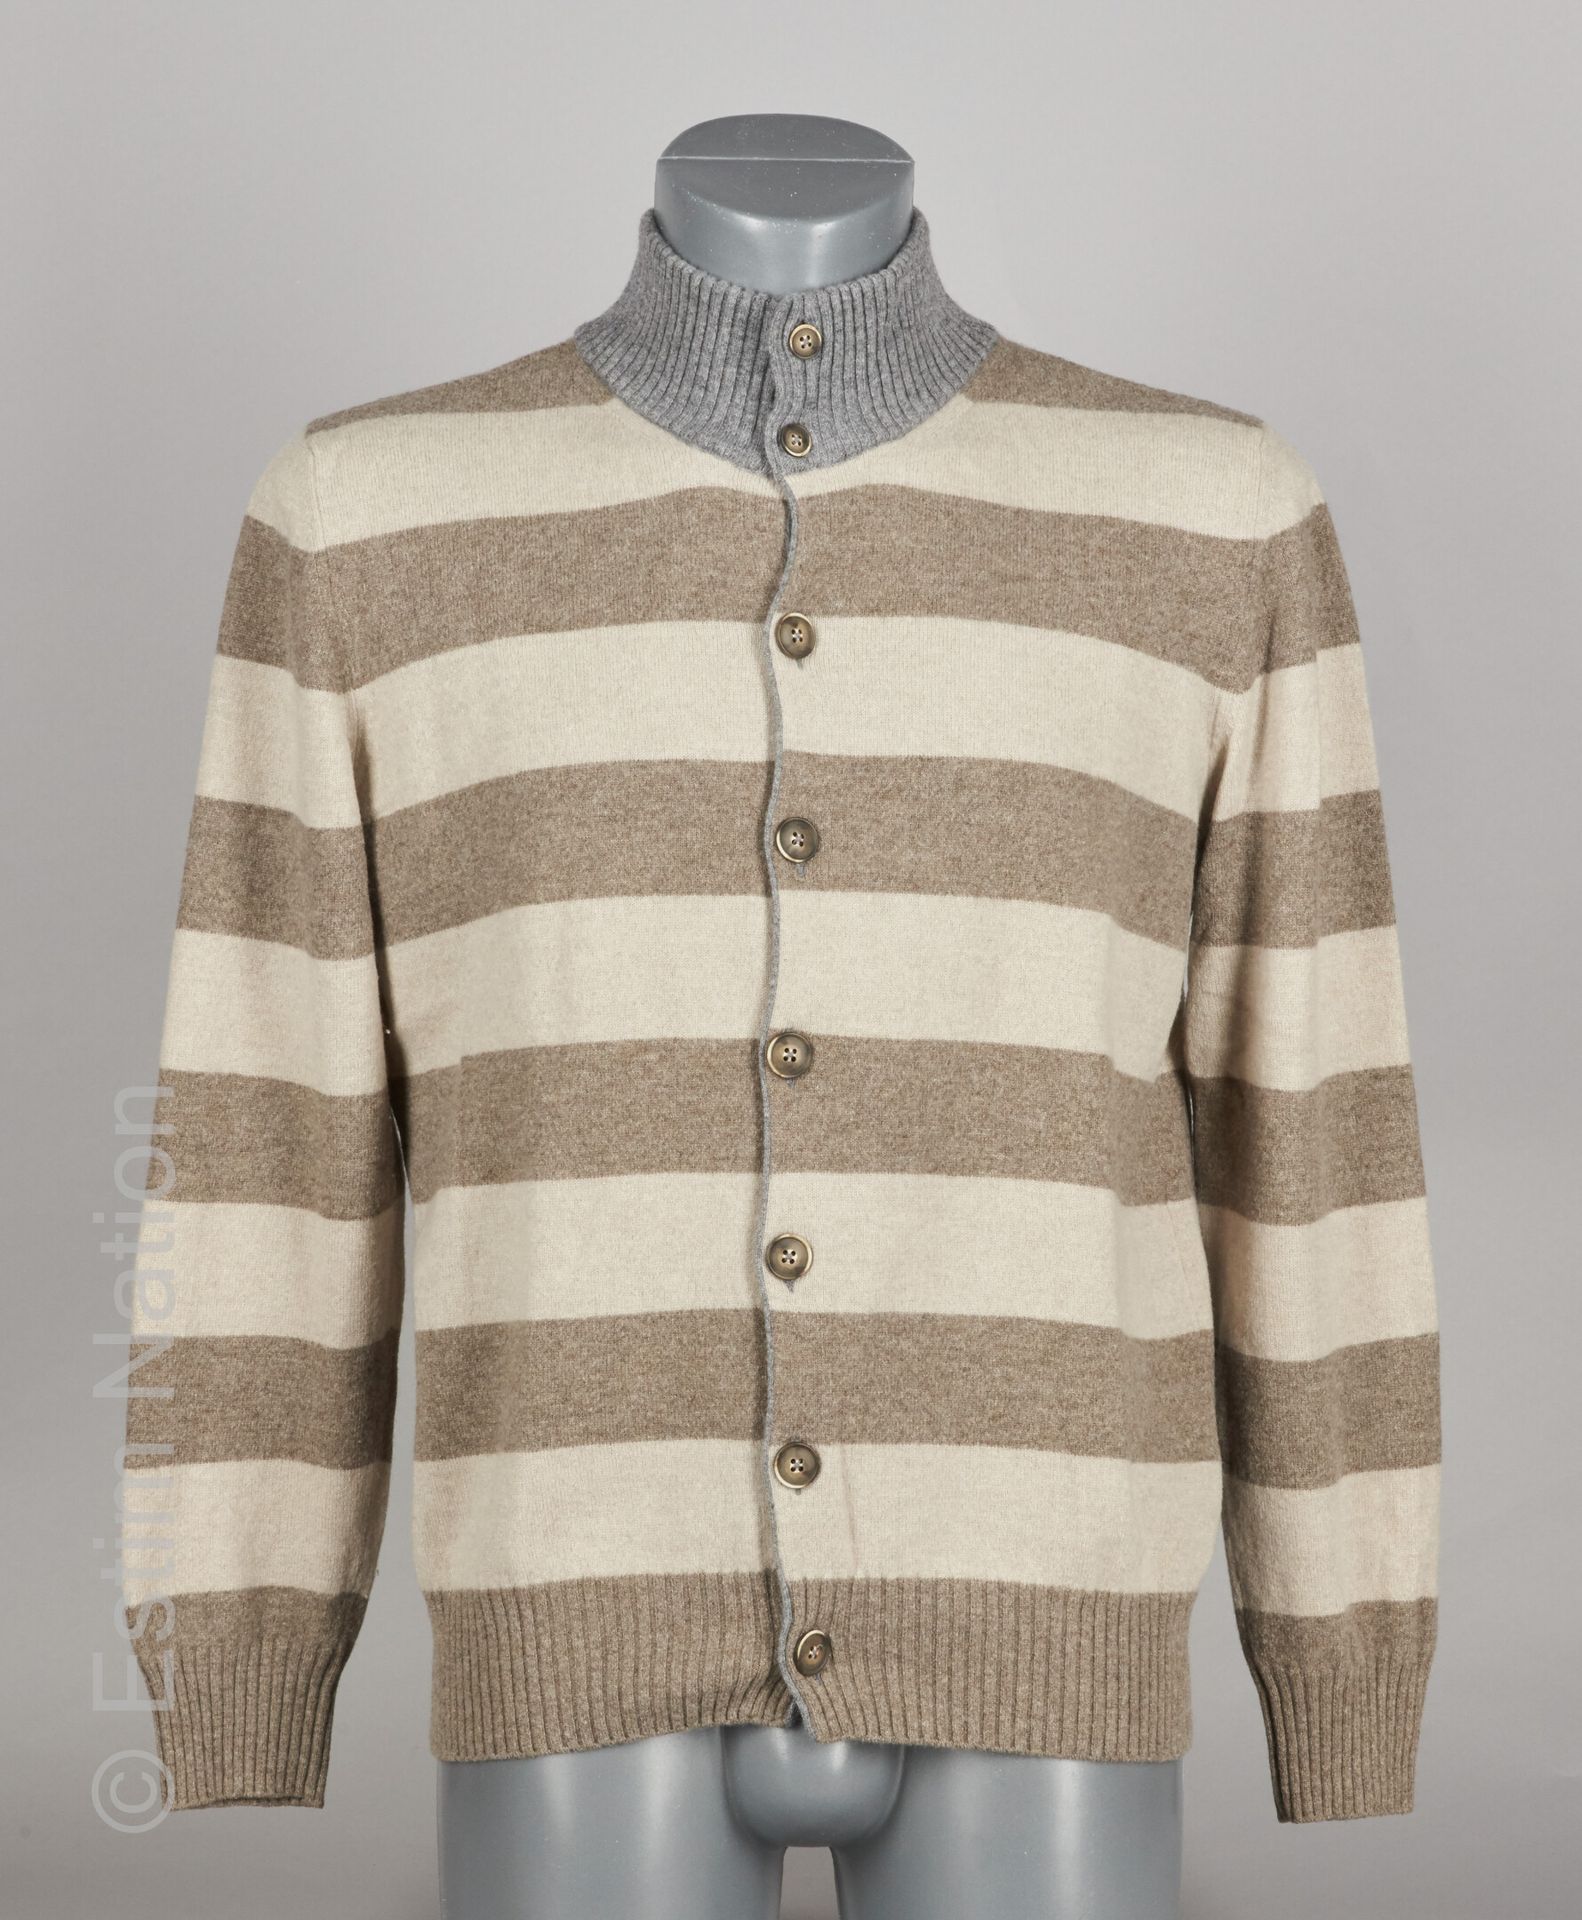 PANICALE 羊毛和羊绒套装，包括一件米色和灰褐色的羊毛和羊绒外套，灰色罗纹领（S52）和配套的羊绒运动裤（S M）（微小的磨损）。